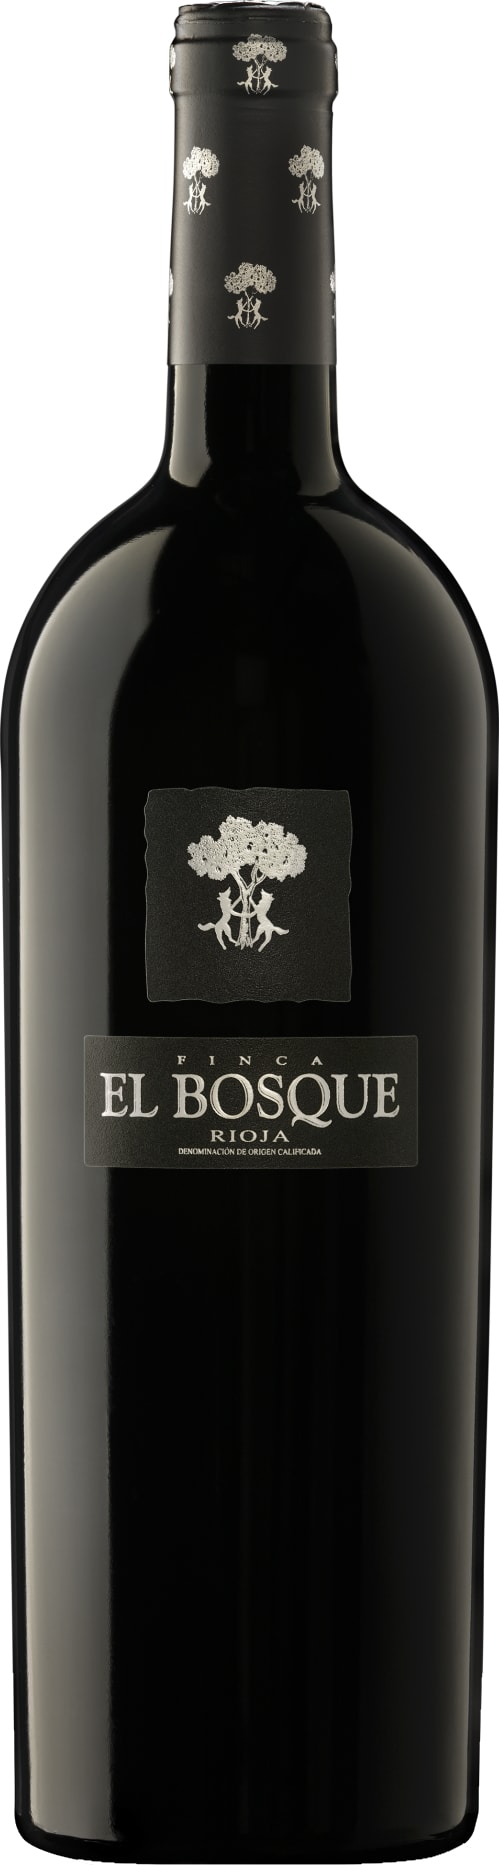 Vinedos Sierra Cantabria Rioja Finca El Bosque 2020 75cl - Buy Vinedos Sierra Cantabria Wines from GREAT WINES DIRECT wine shop